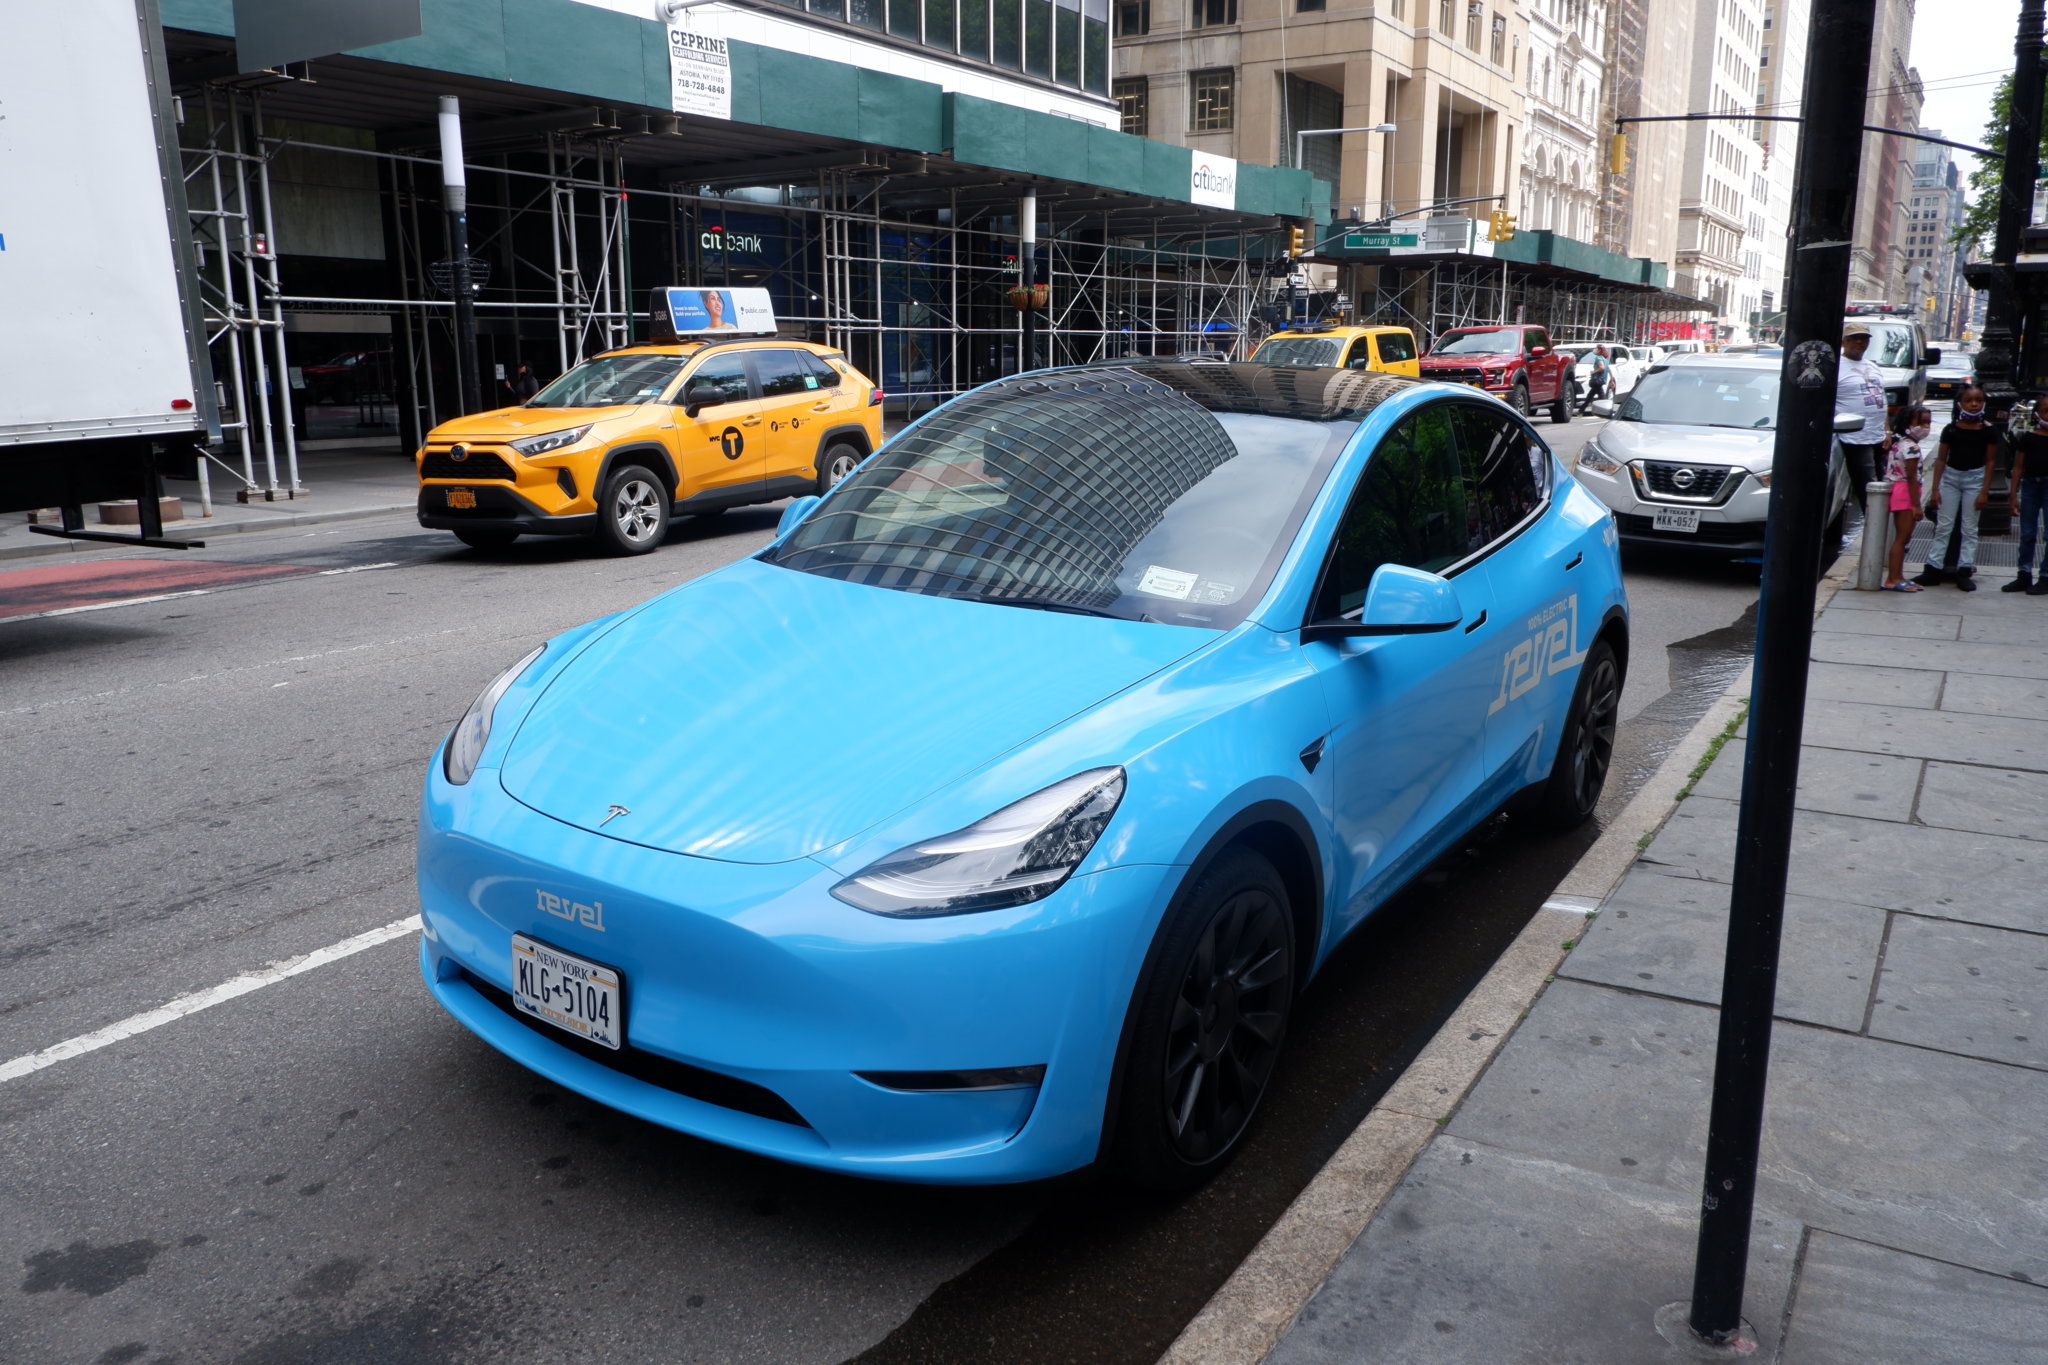 Unreveled NYC closes electric vehicle exemption, blocking Revel’s